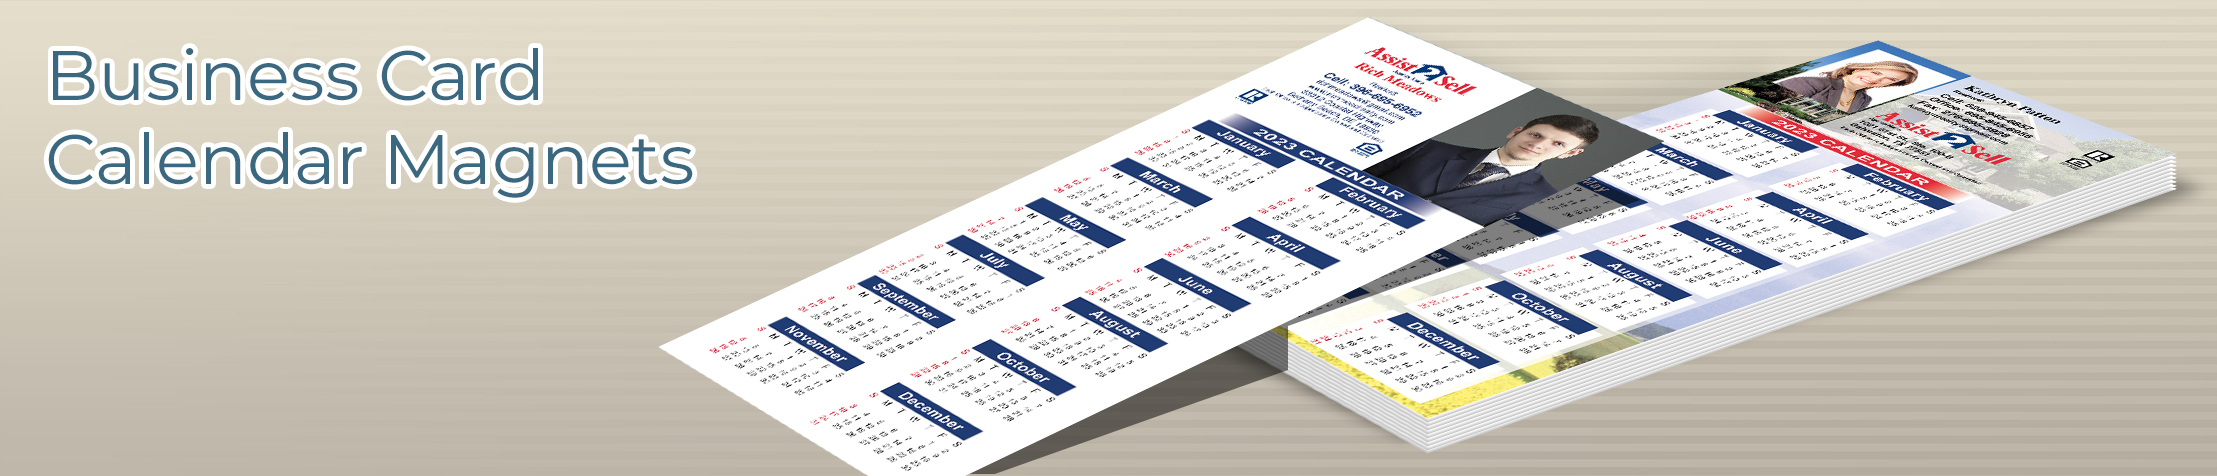 Assist2Sell Real Estate Business Card Calendar Magnets - Assist2Sell Real Estate  personalized marketing materials | BestPrintBuy.com